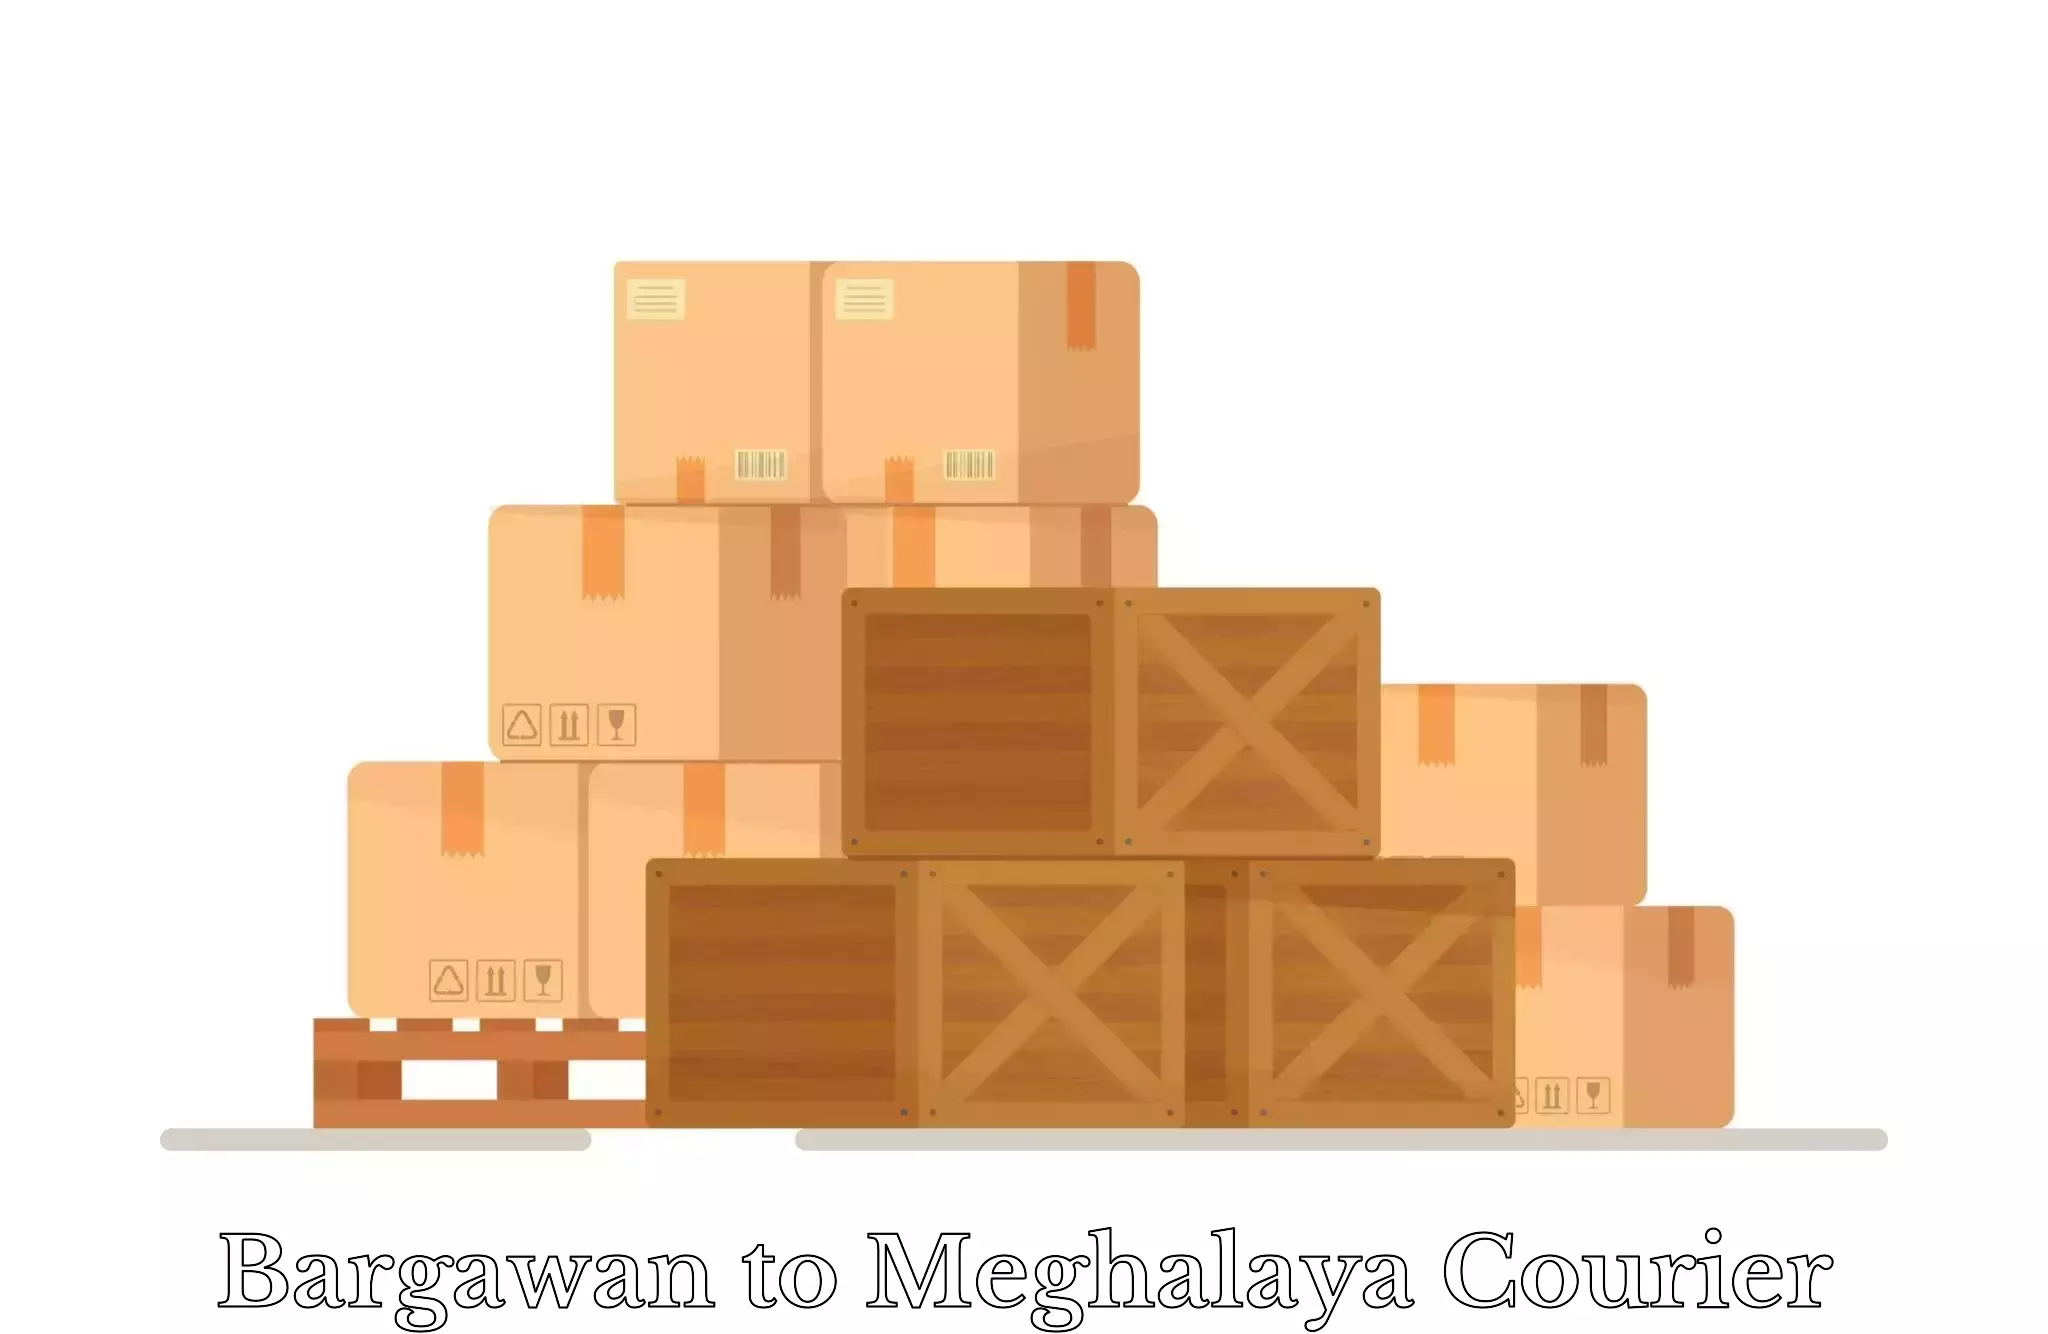 Baggage transport technology in Bargawan to NIT Meghalaya